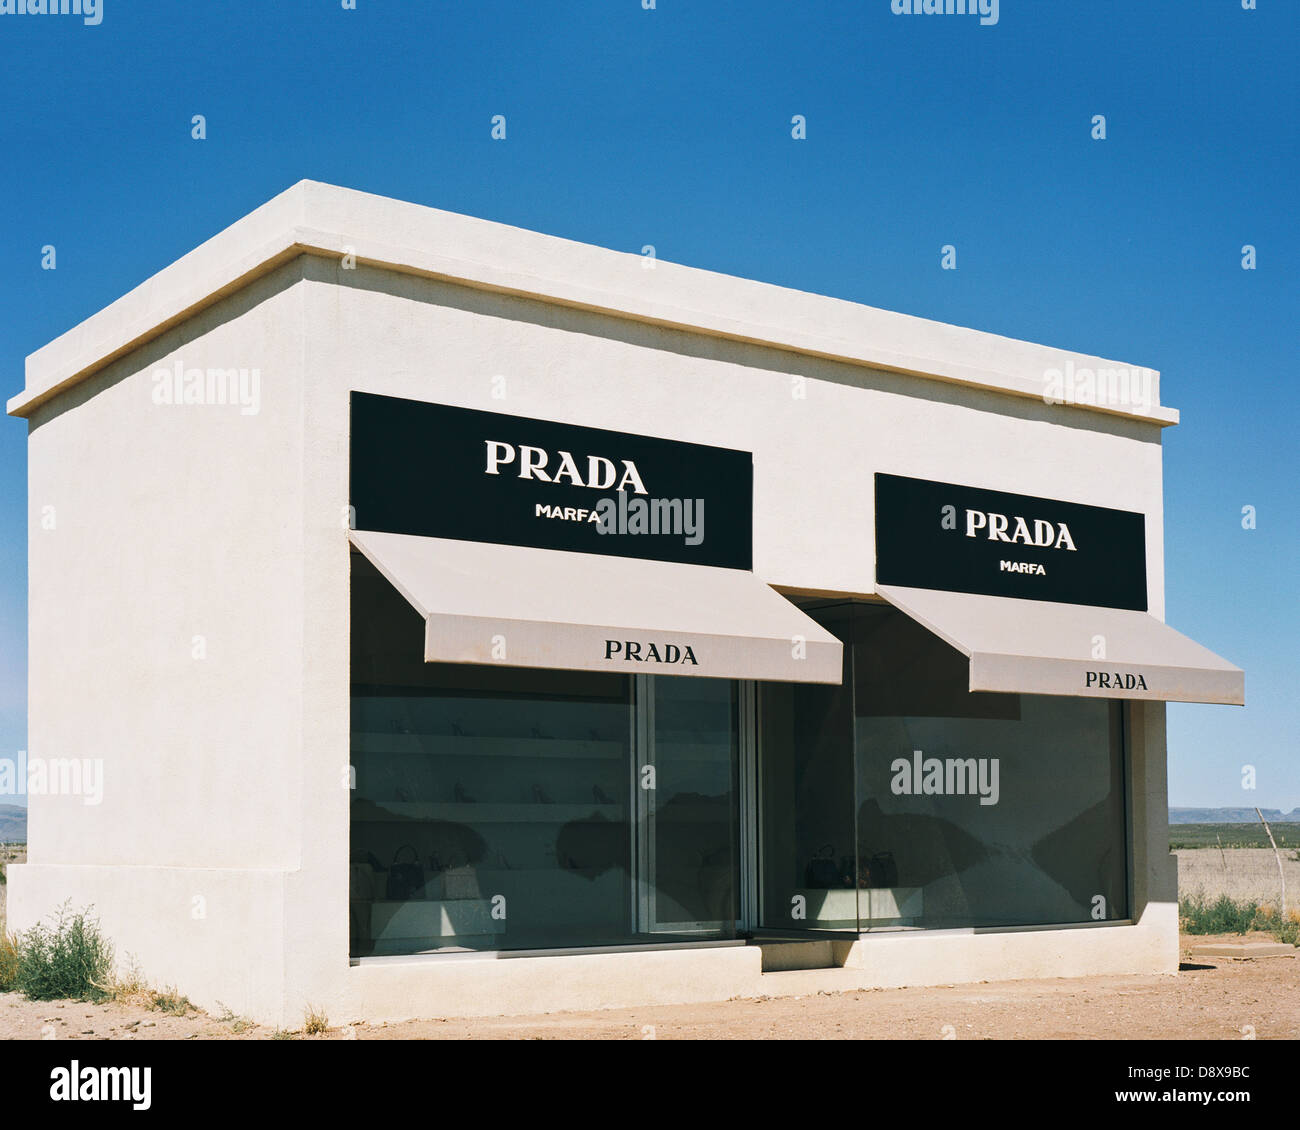 Fake retail installation for Prada in Marfa Texas Stock Photo - Alamy